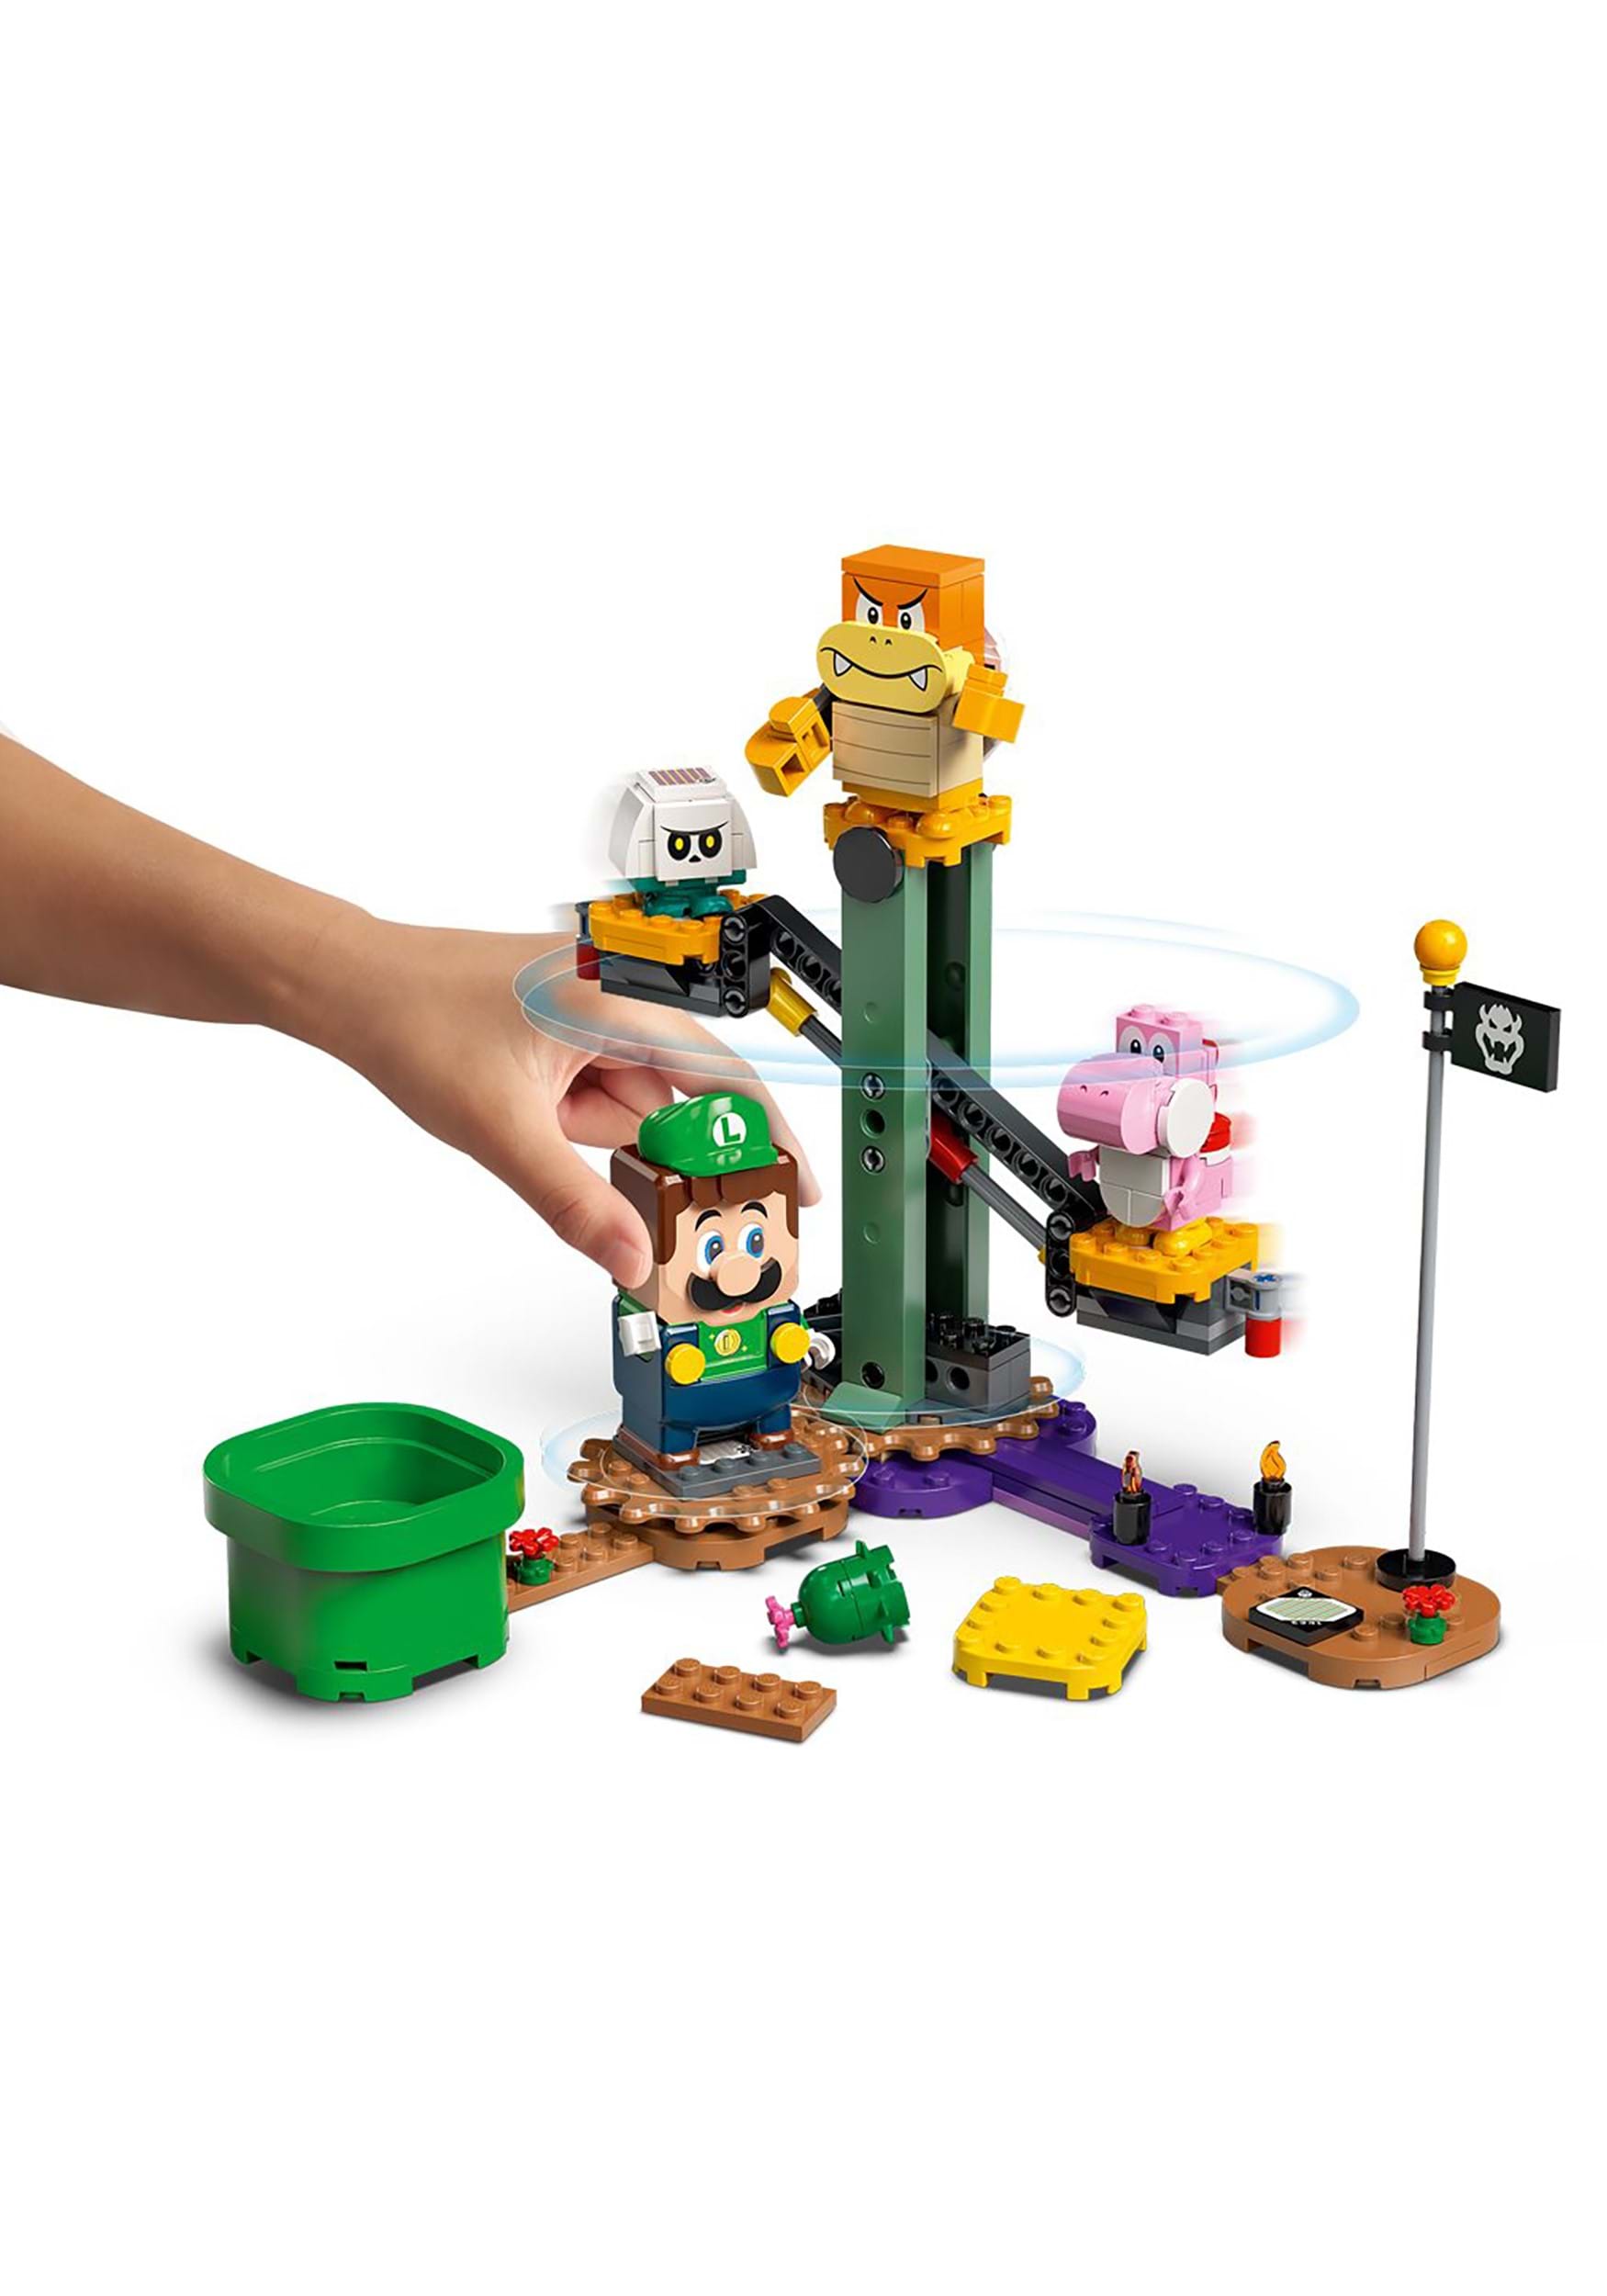 LEGO Super Mario Luigi Starter Course Building